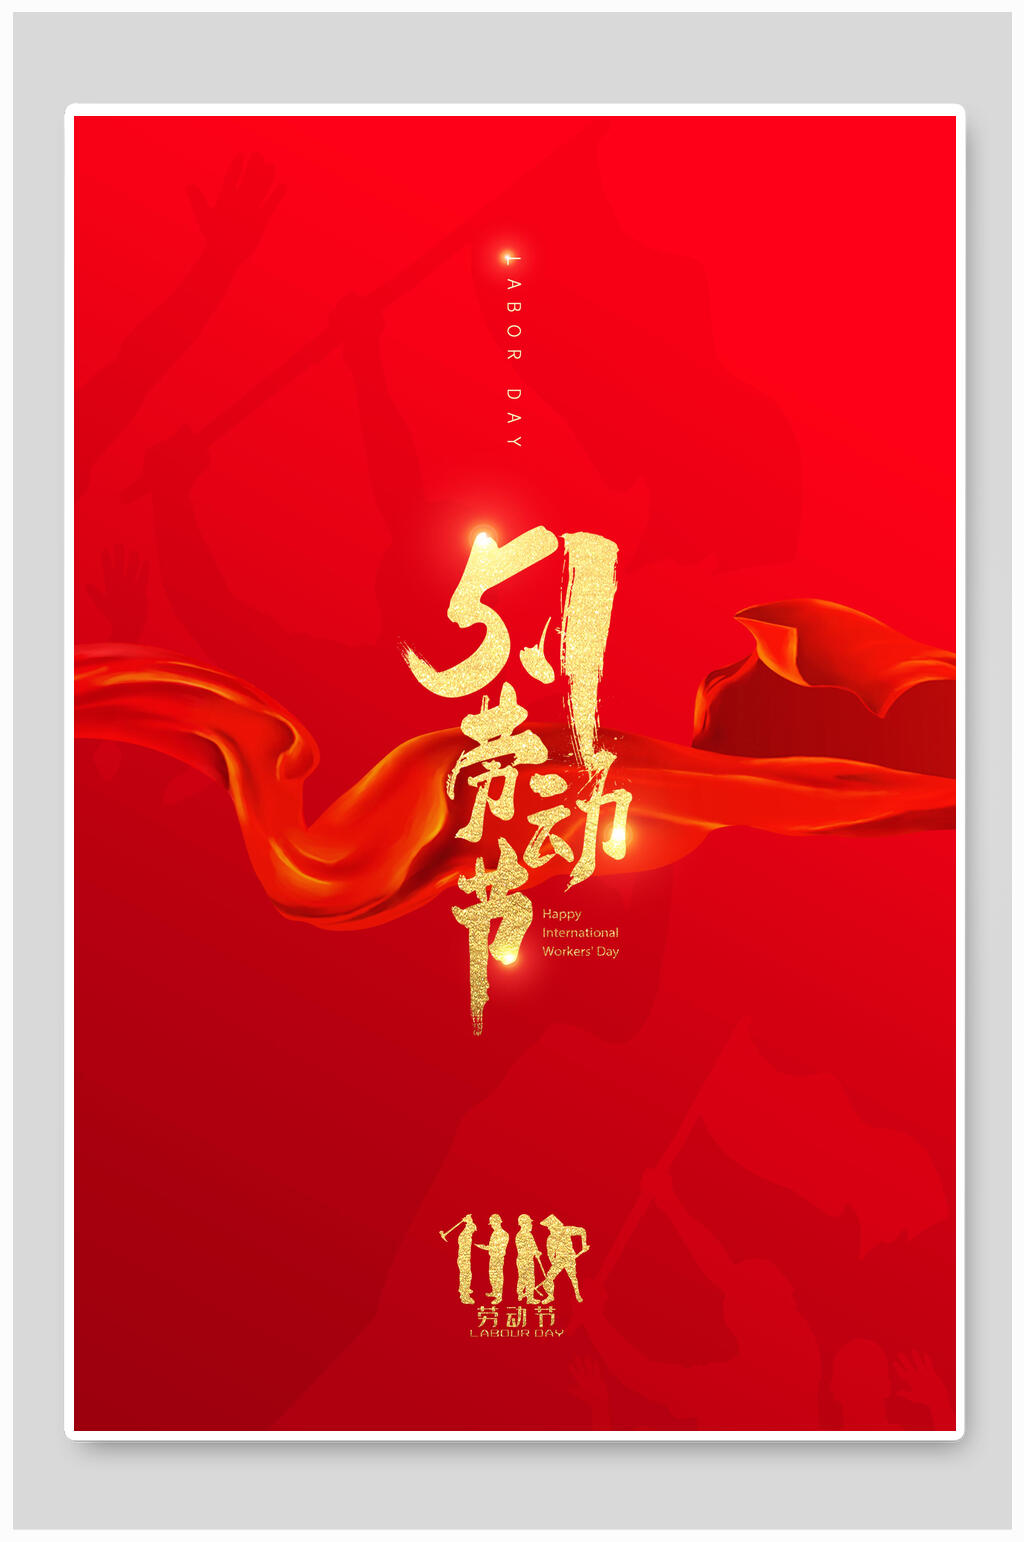 众图网独家提供中国节日五一劳动节海报素材免费下载,本作品是由娜妮